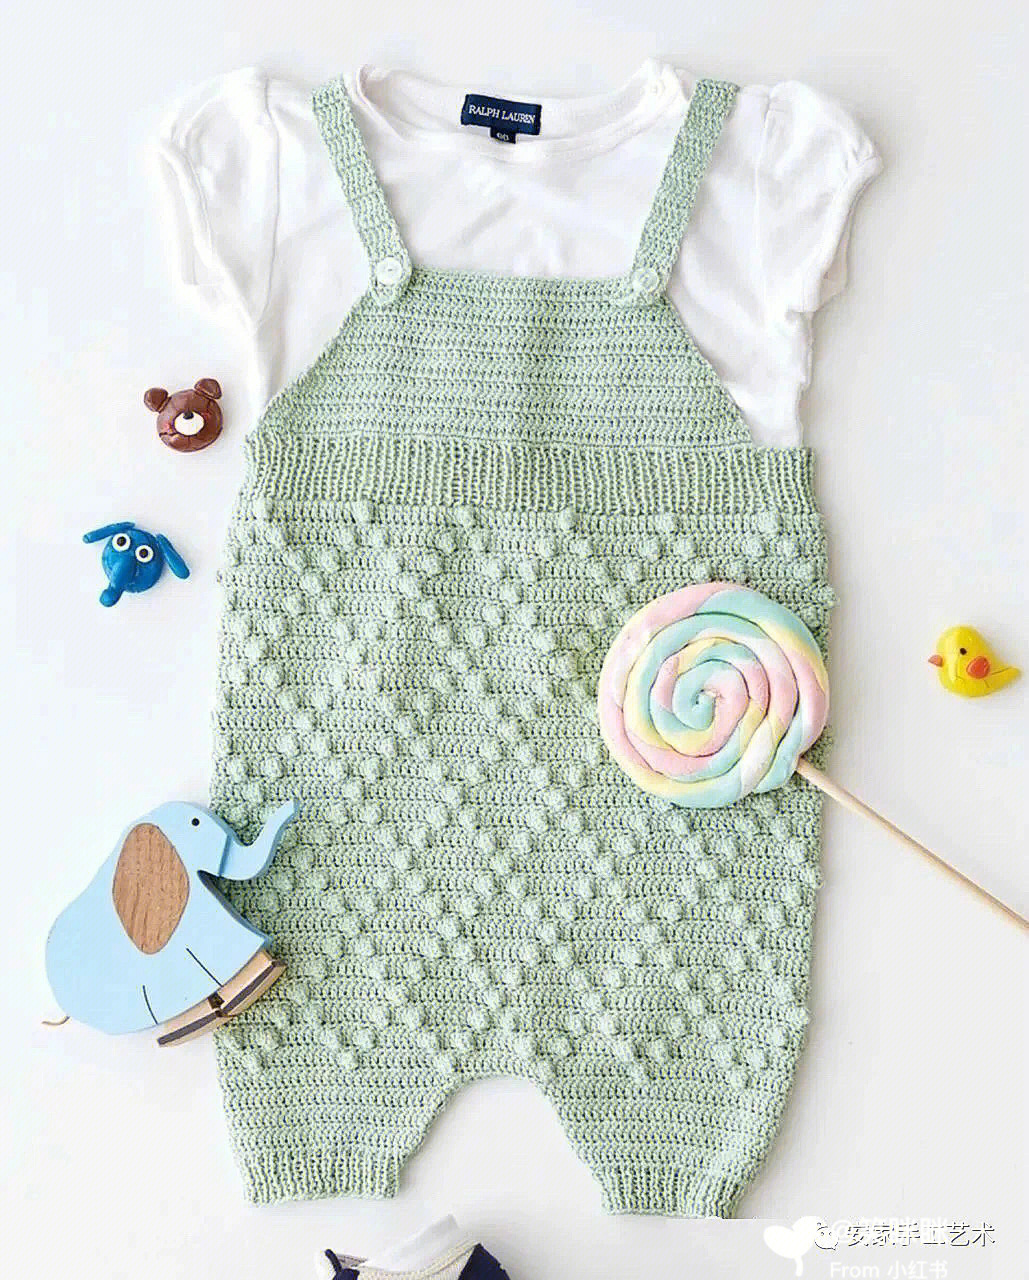 宝宝连衣裤的编织法图片